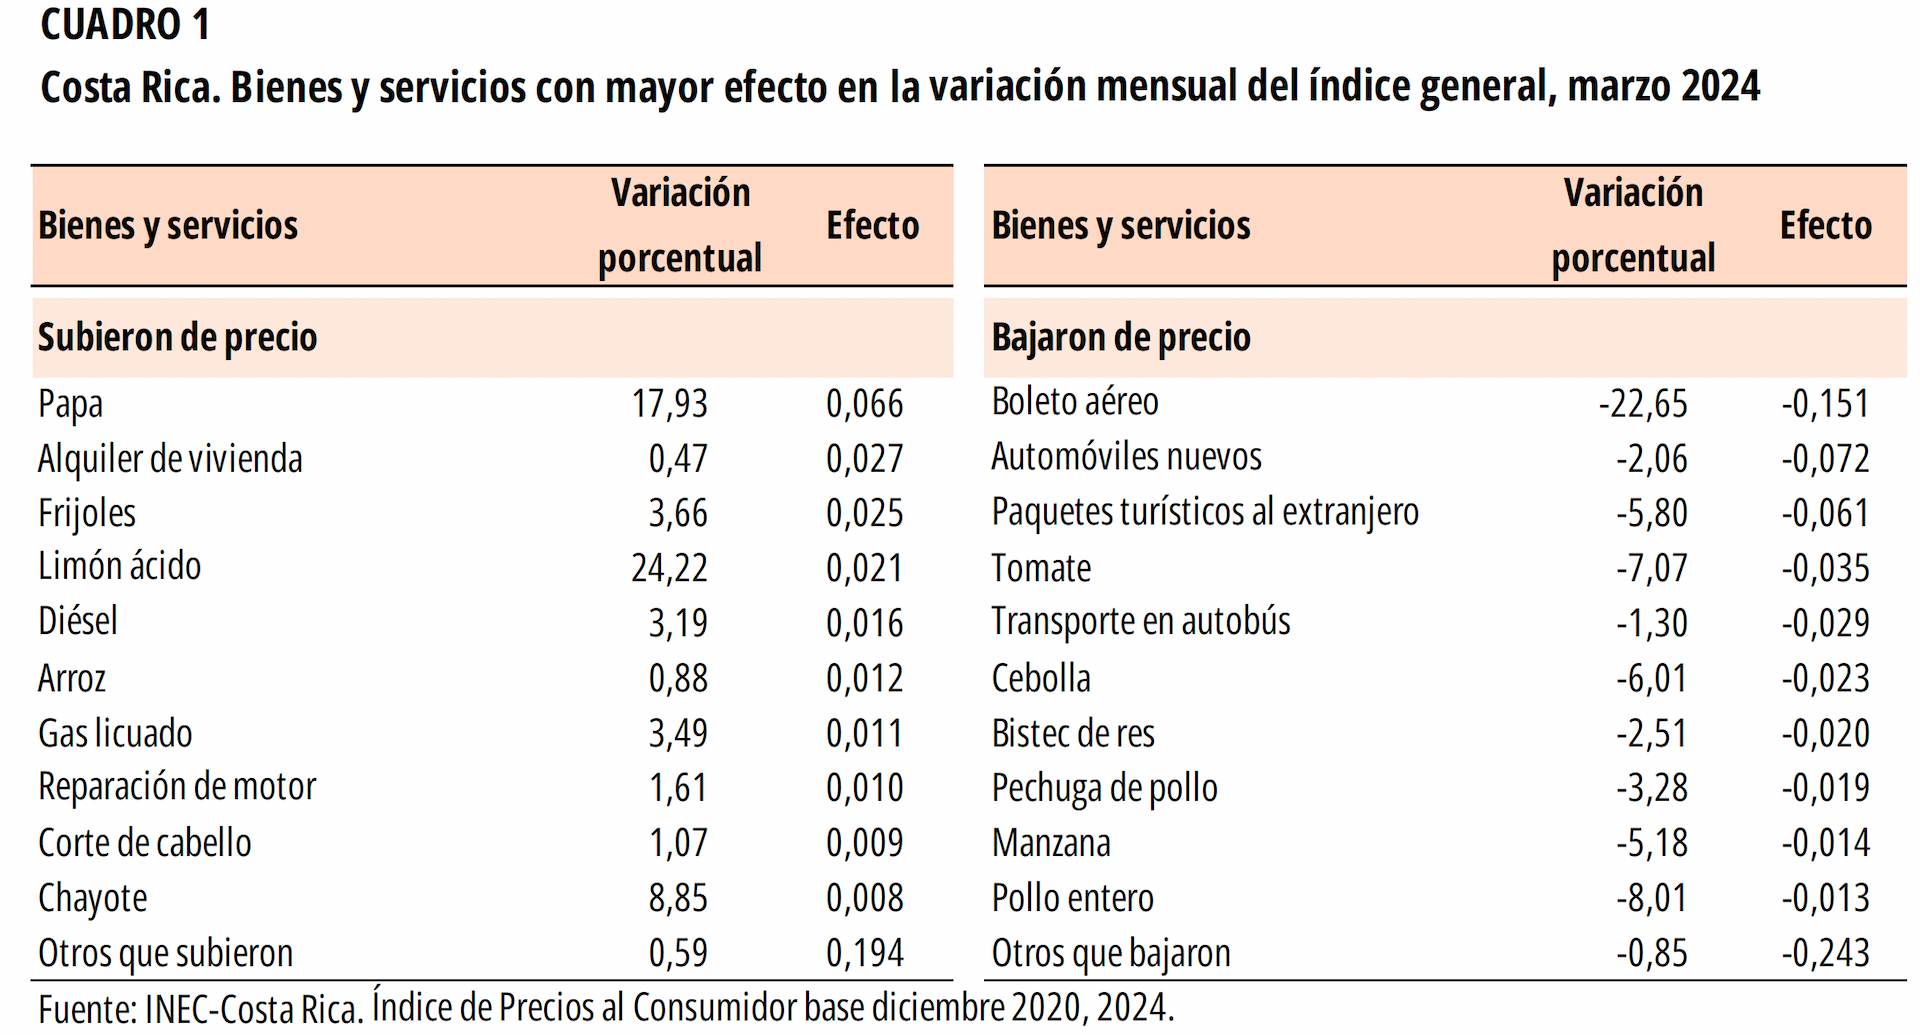 CUADRO 1. Costa Rica. Bienes y servicios con mayor efecto en la variación mensual del índice general, marzo 2024.